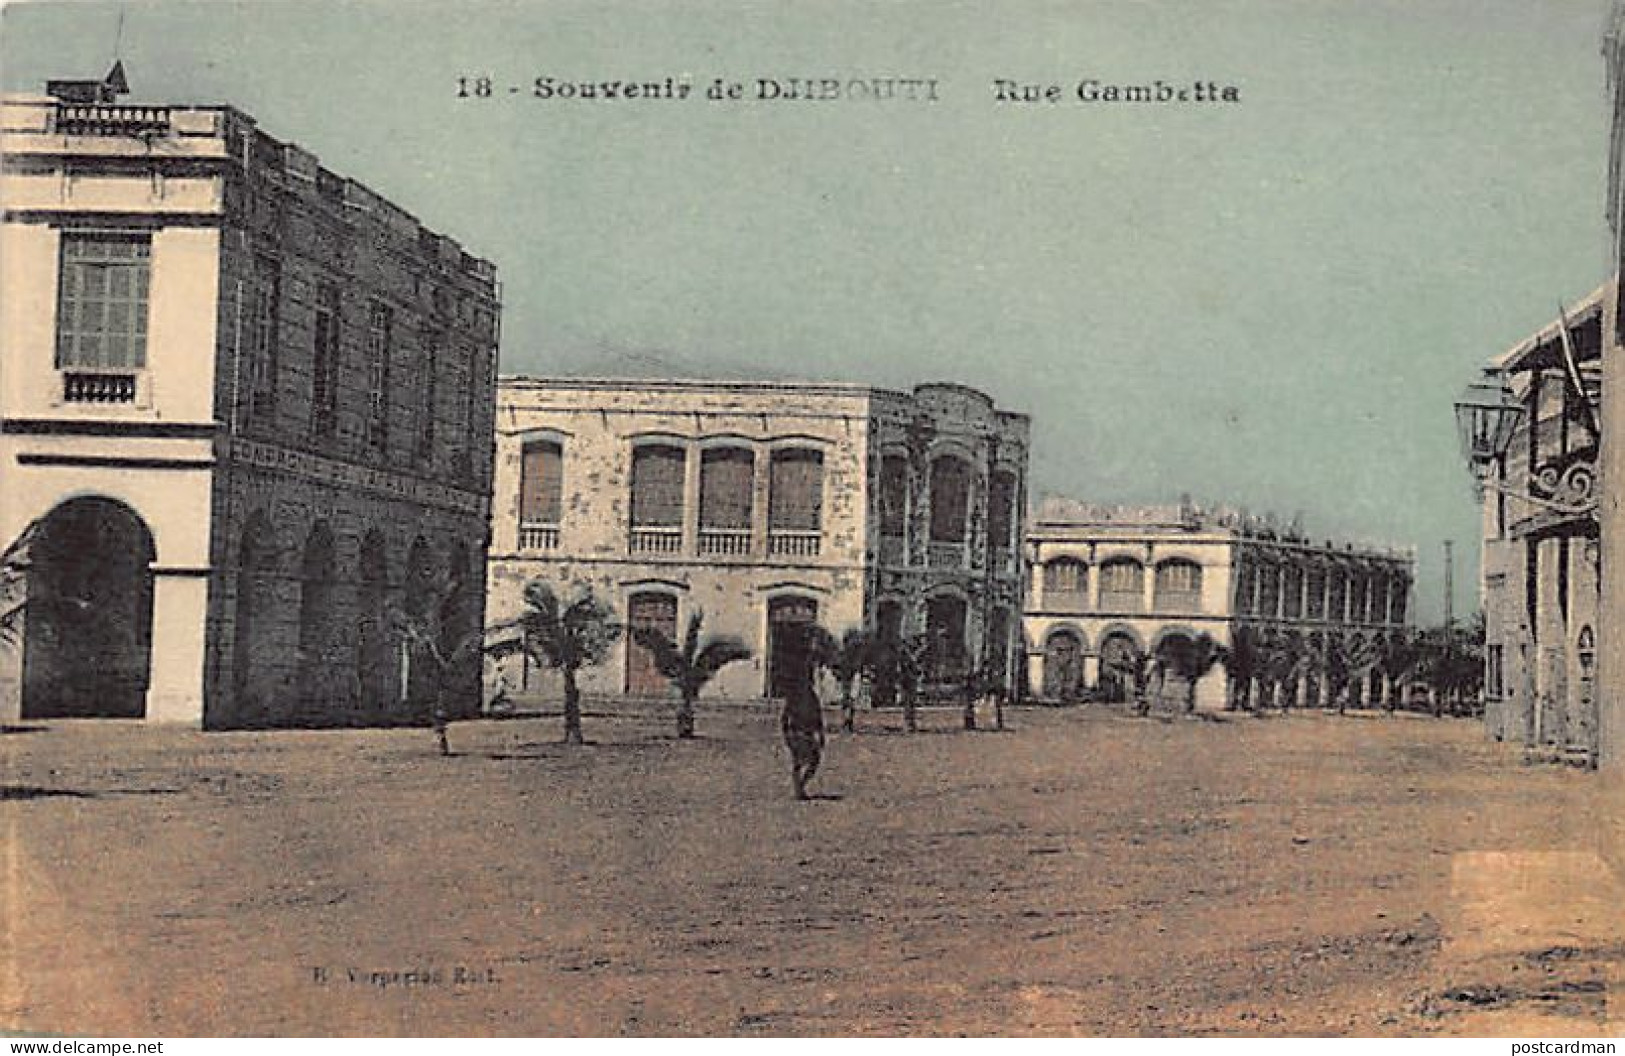 DJIBOUTI - Rue Gambetta - Ed. R. Vorperian 18 - Djibouti